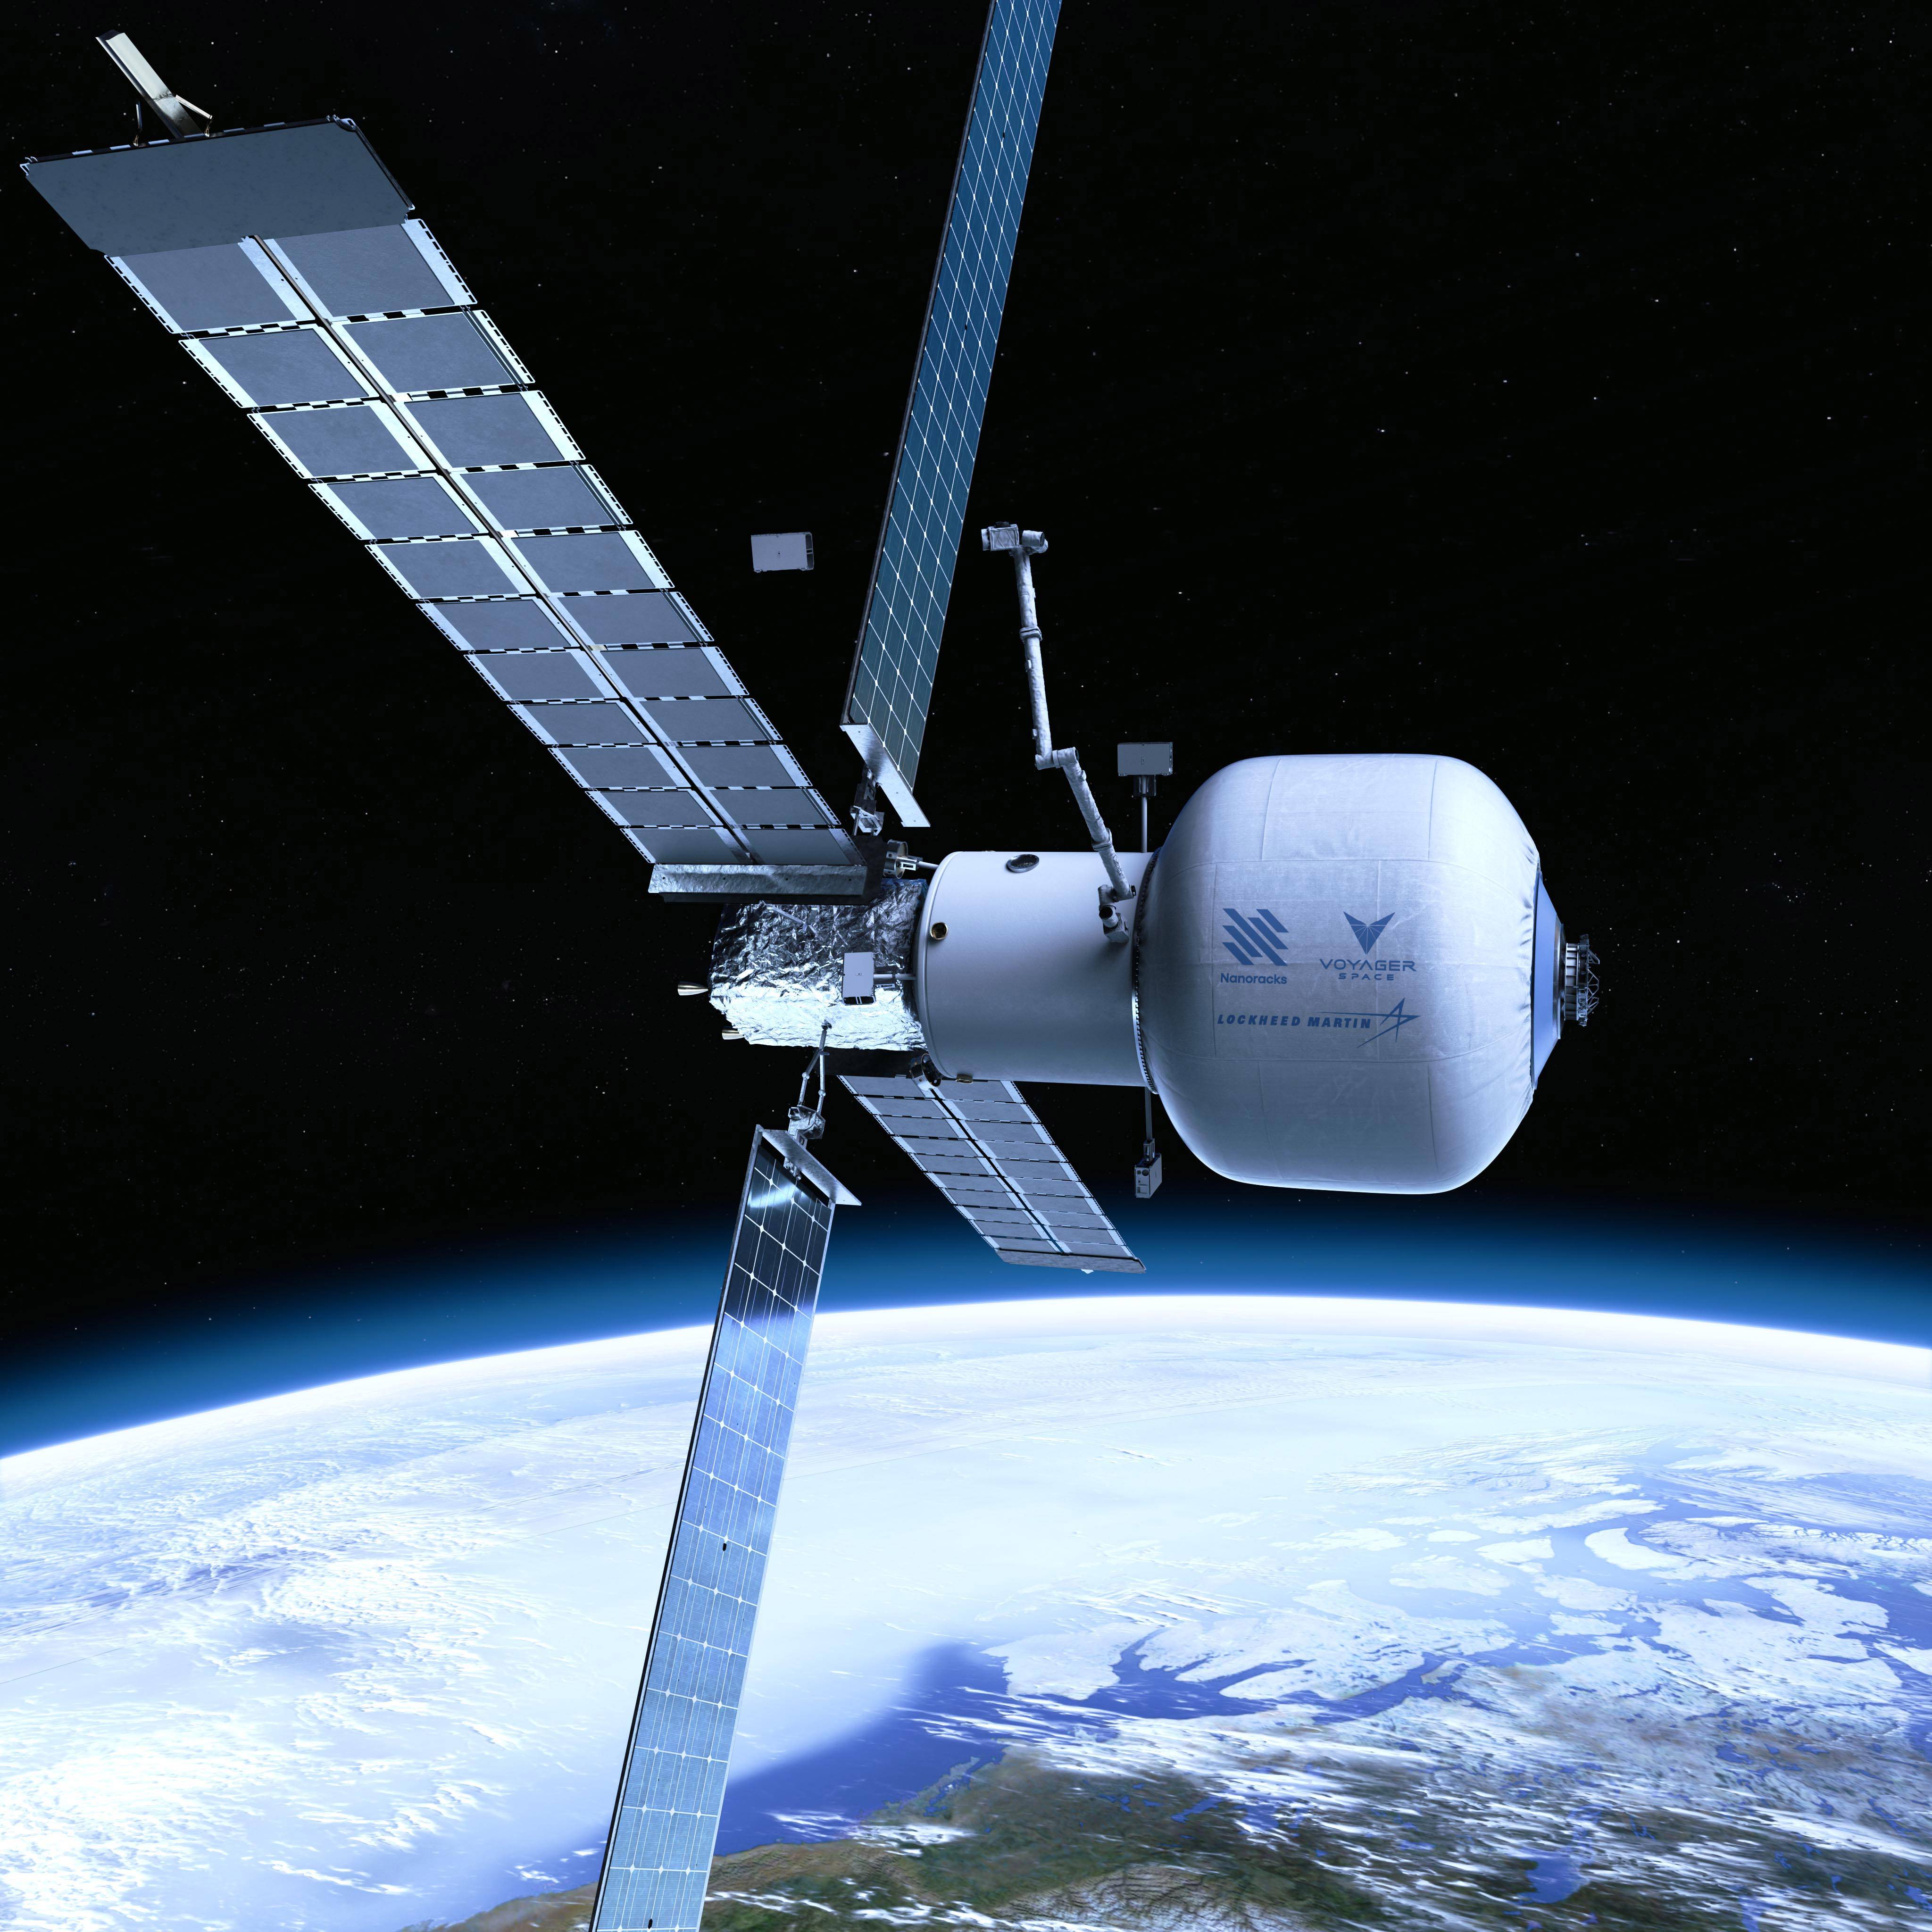 Starlab space station - È risolto, il fondatore di Amazon sarà il primo “parco spaziale”